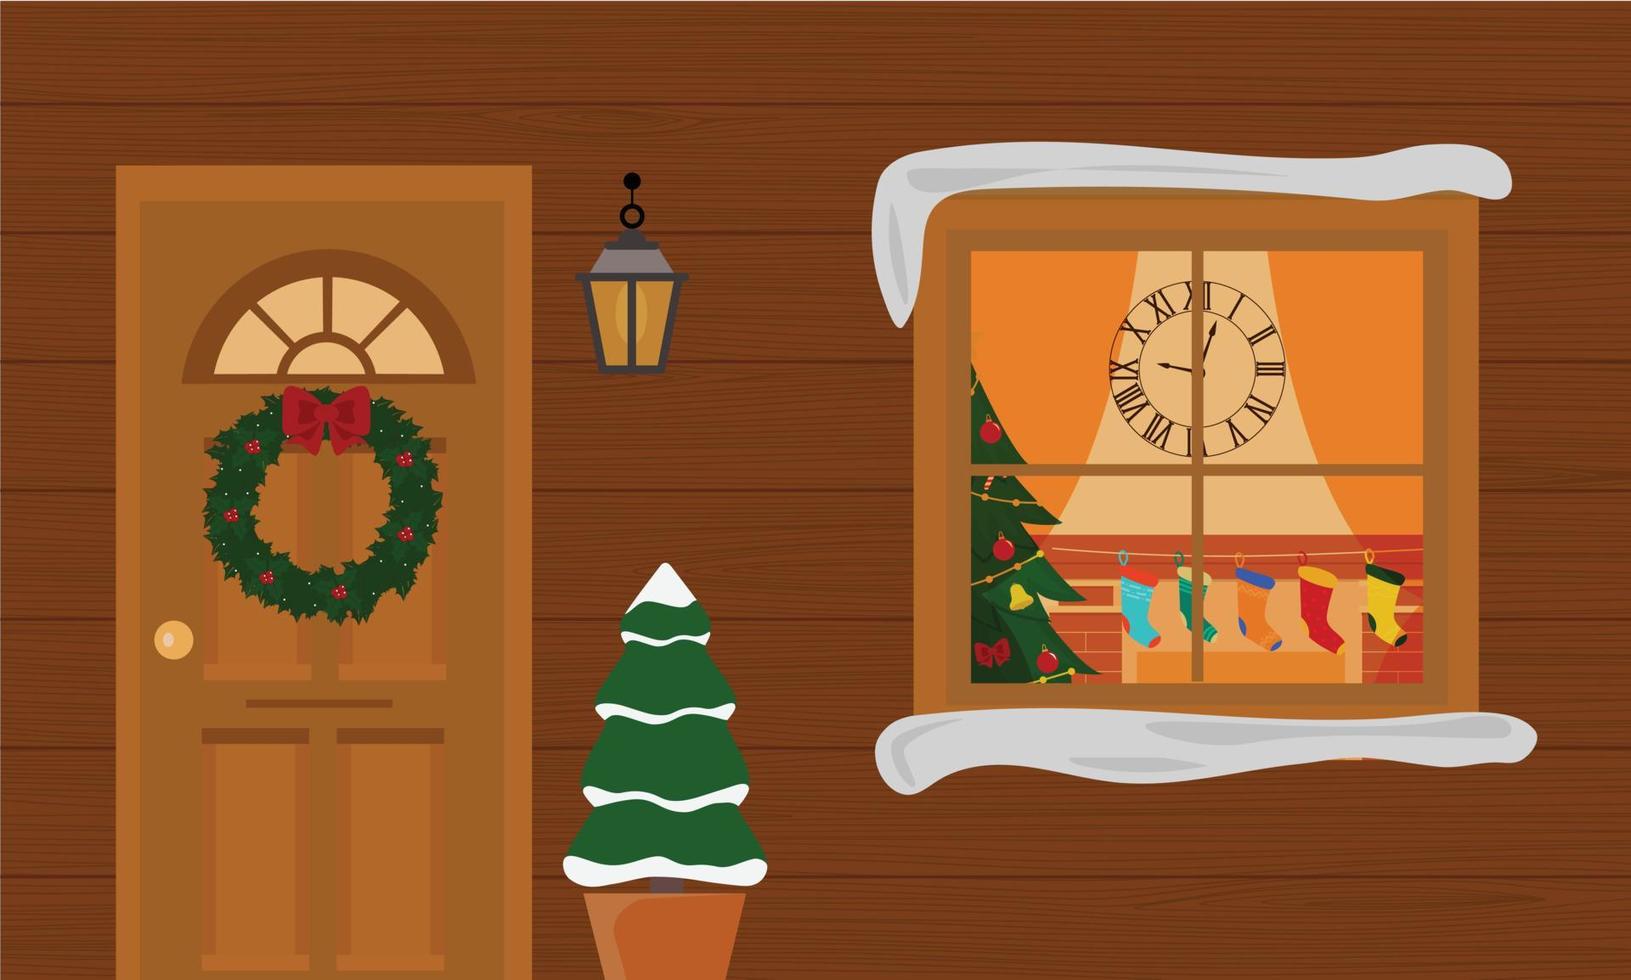 casa de natal com varanda de decoração com pequenas árvores e lanternas. janela com árvore de natal da sala de estar de natal, luzes, presentes, lareira. vetor